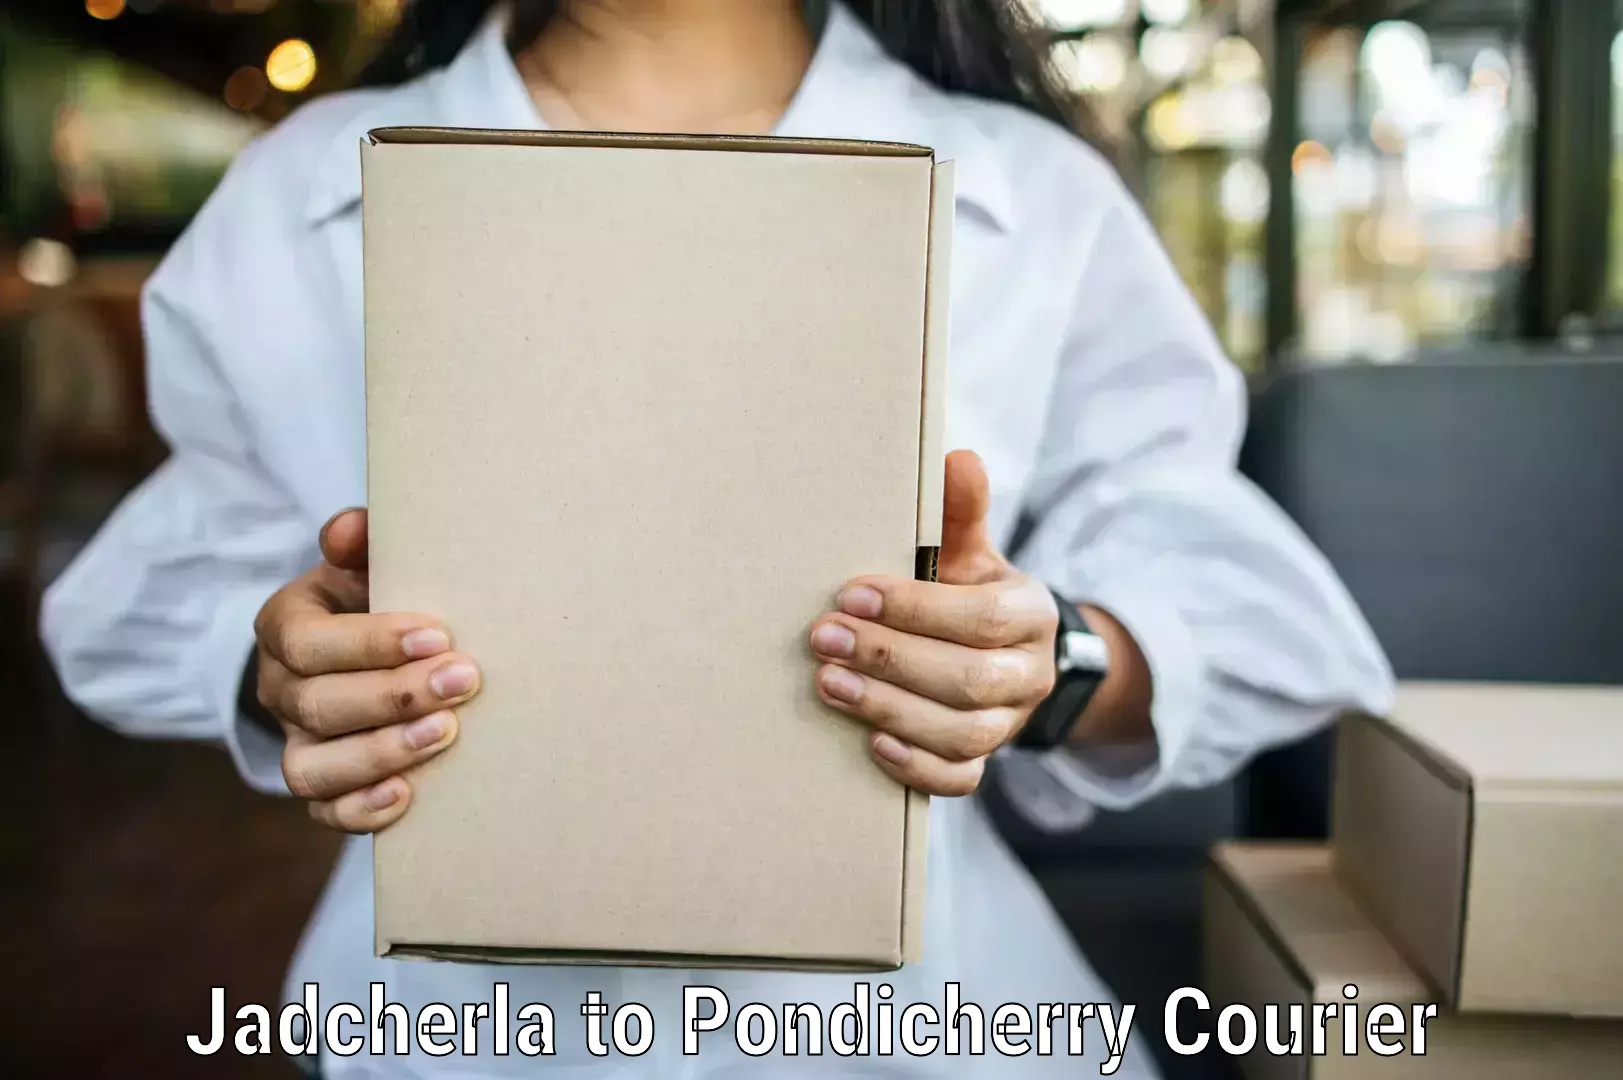 24/7 courier service Jadcherla to Pondicherry